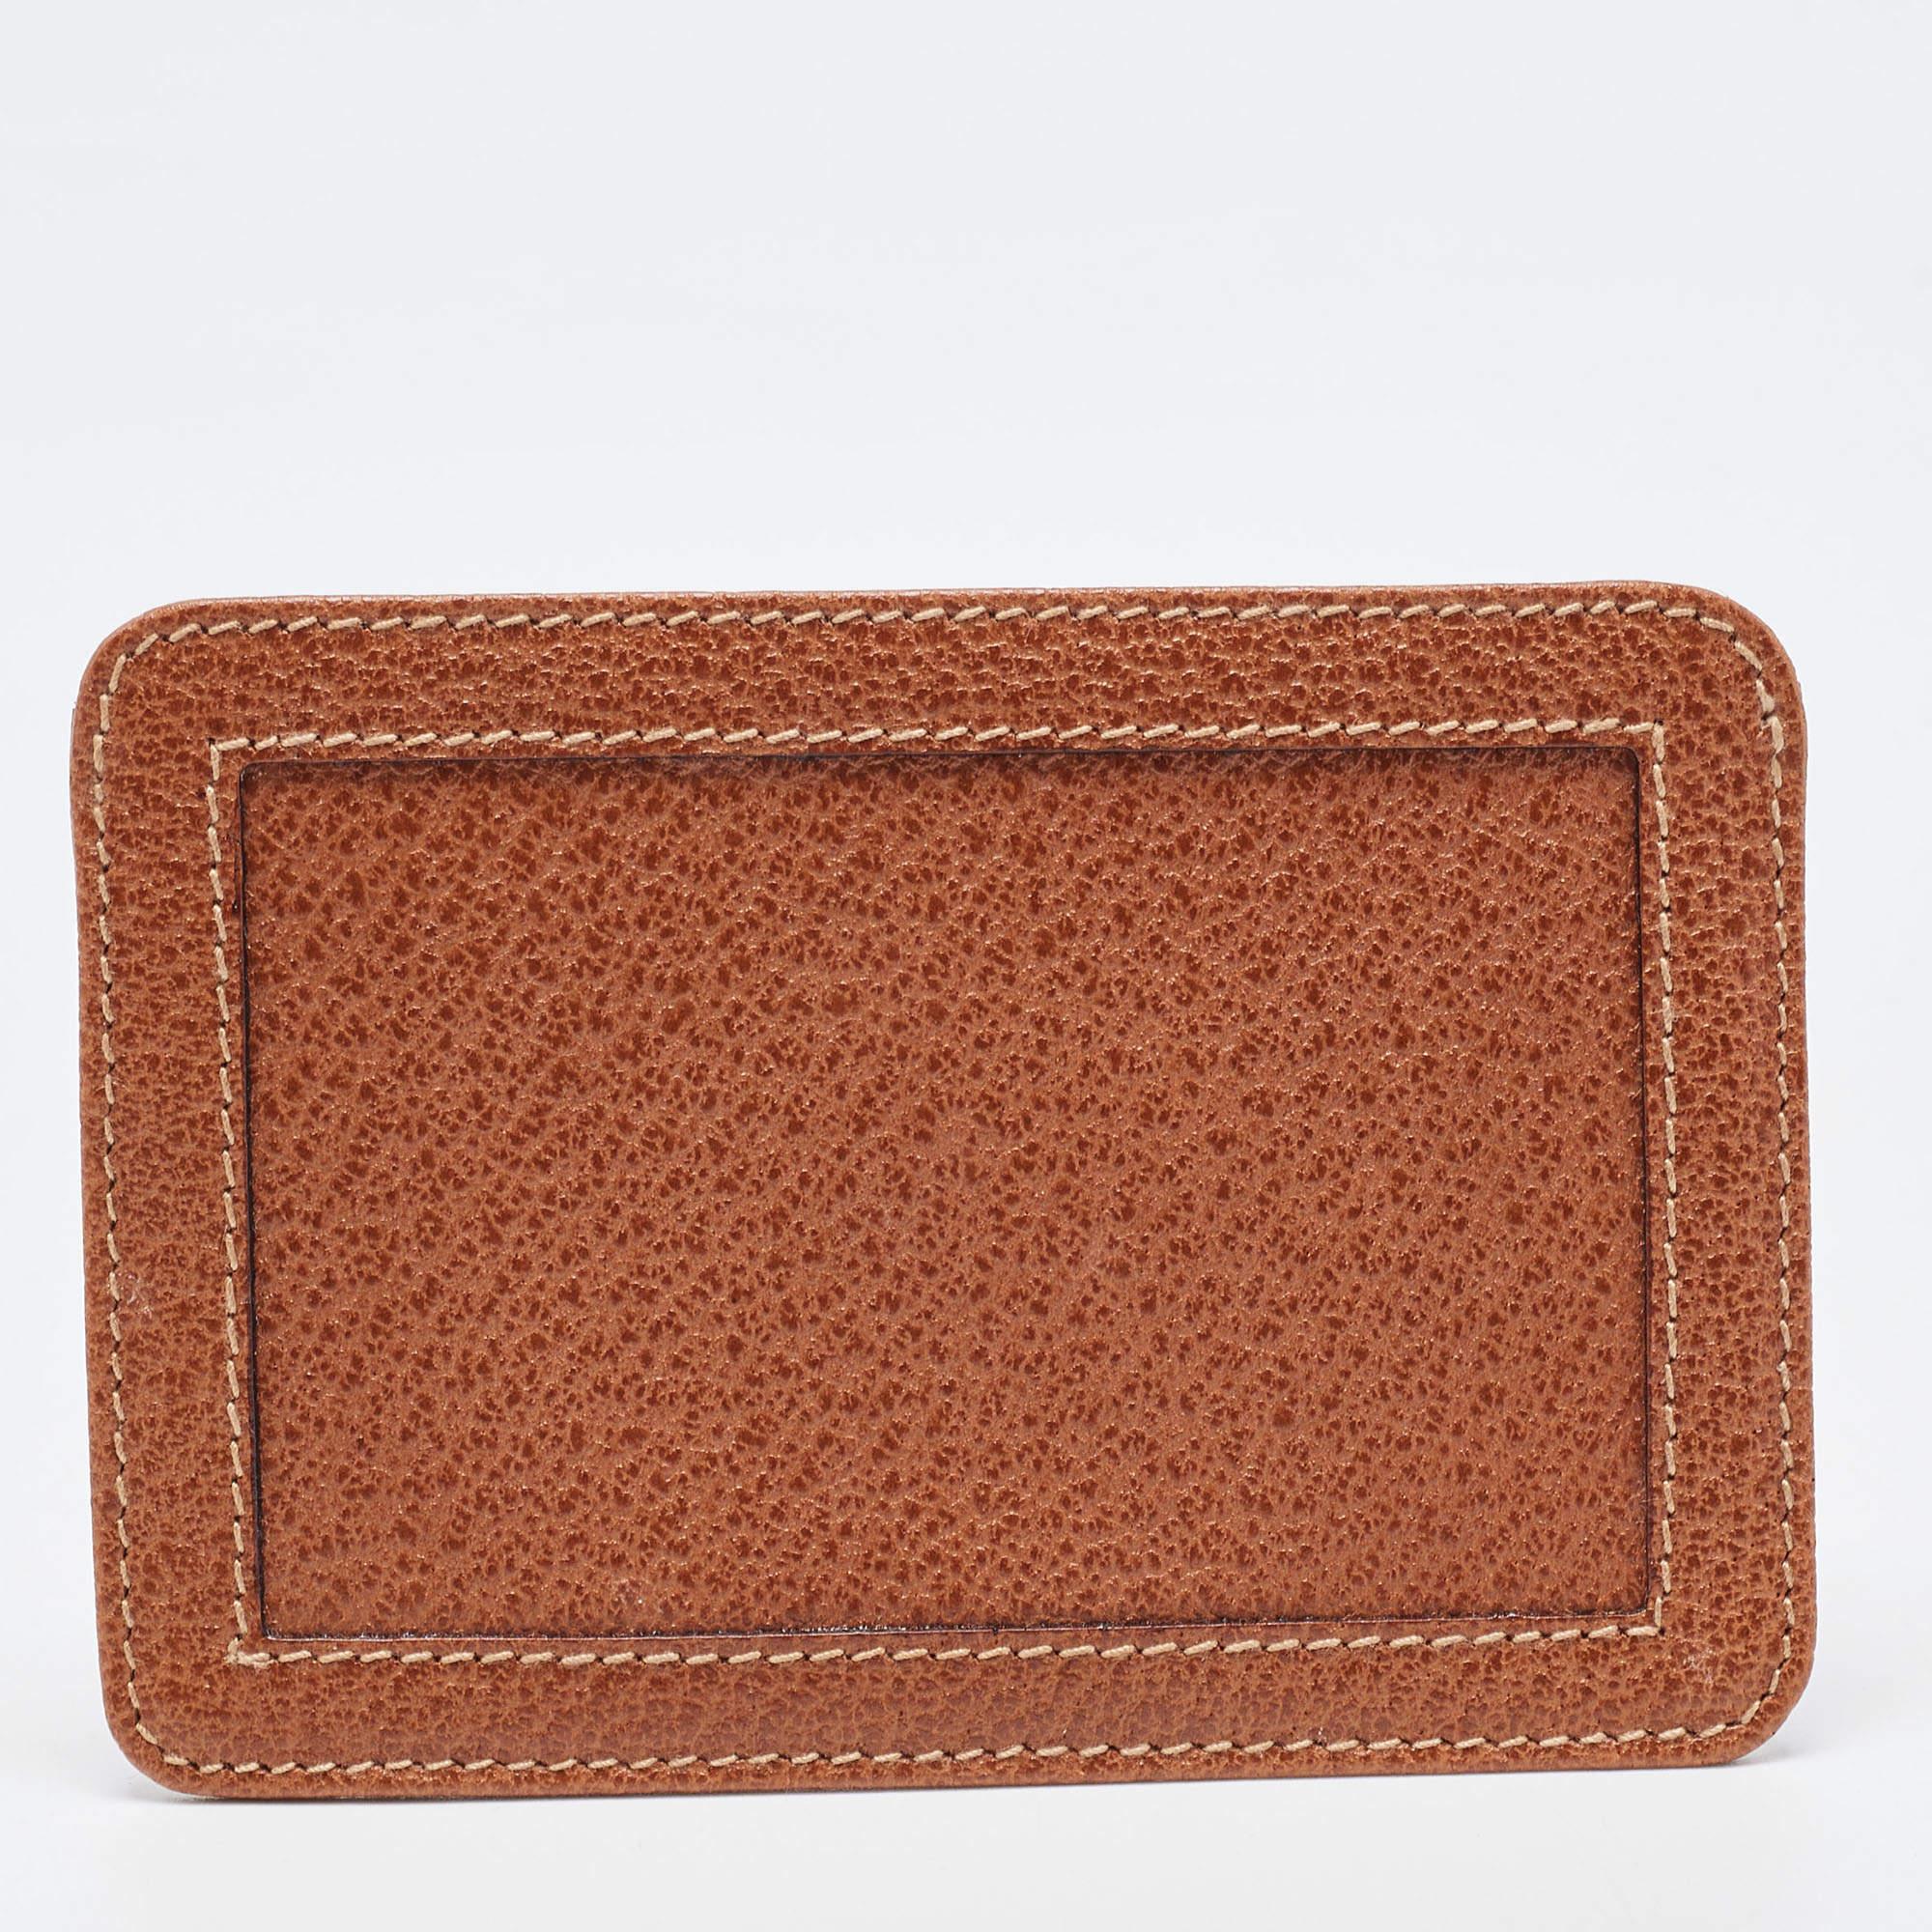 Gucci Brown Leather Card Holder In Good Condition For Sale In Dubai, Al Qouz 2